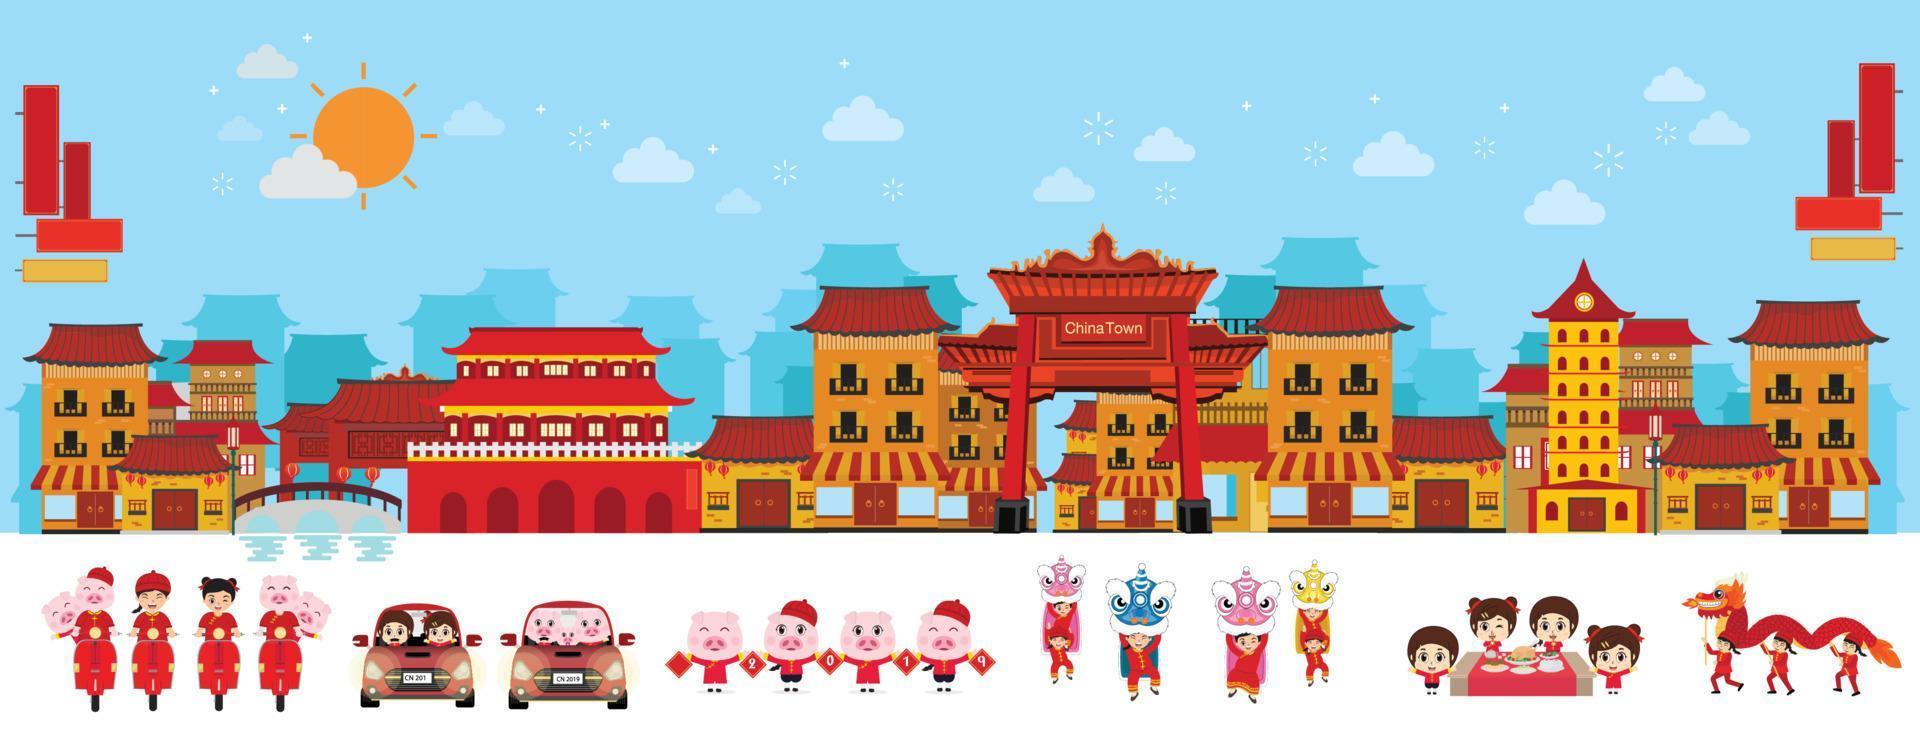 città cinese e antica architettura con la danza del drago. illustrazione vettoriale